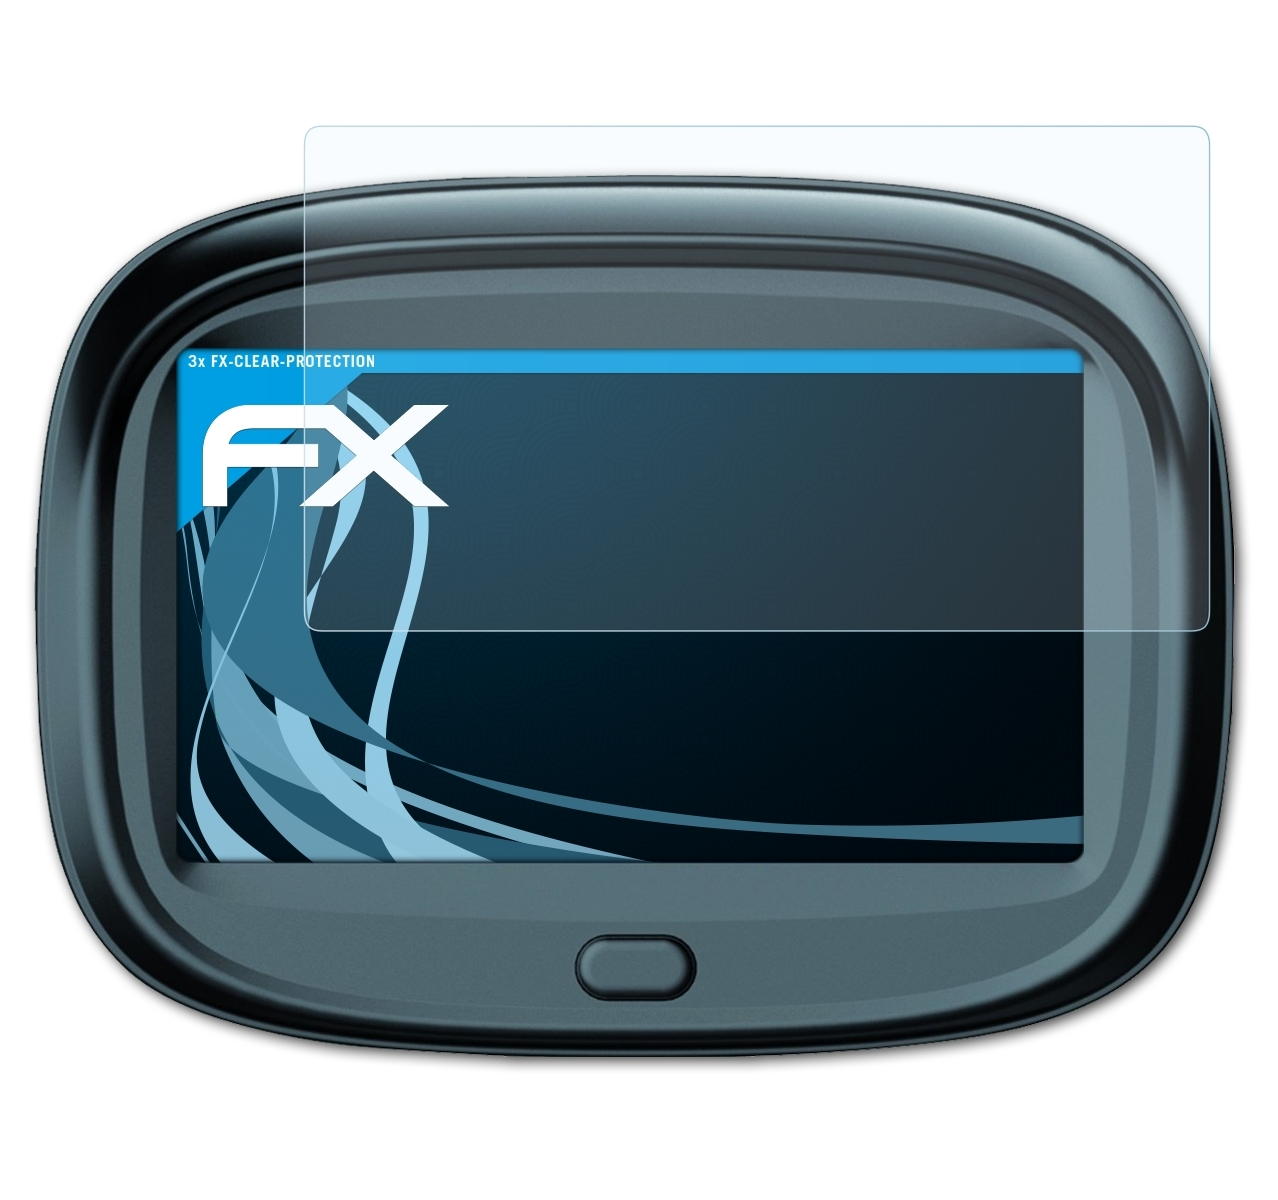 ATFOLIX 3x FX-Clear Displayschutz(für Blaupunkt MotoPilot 43 EU)